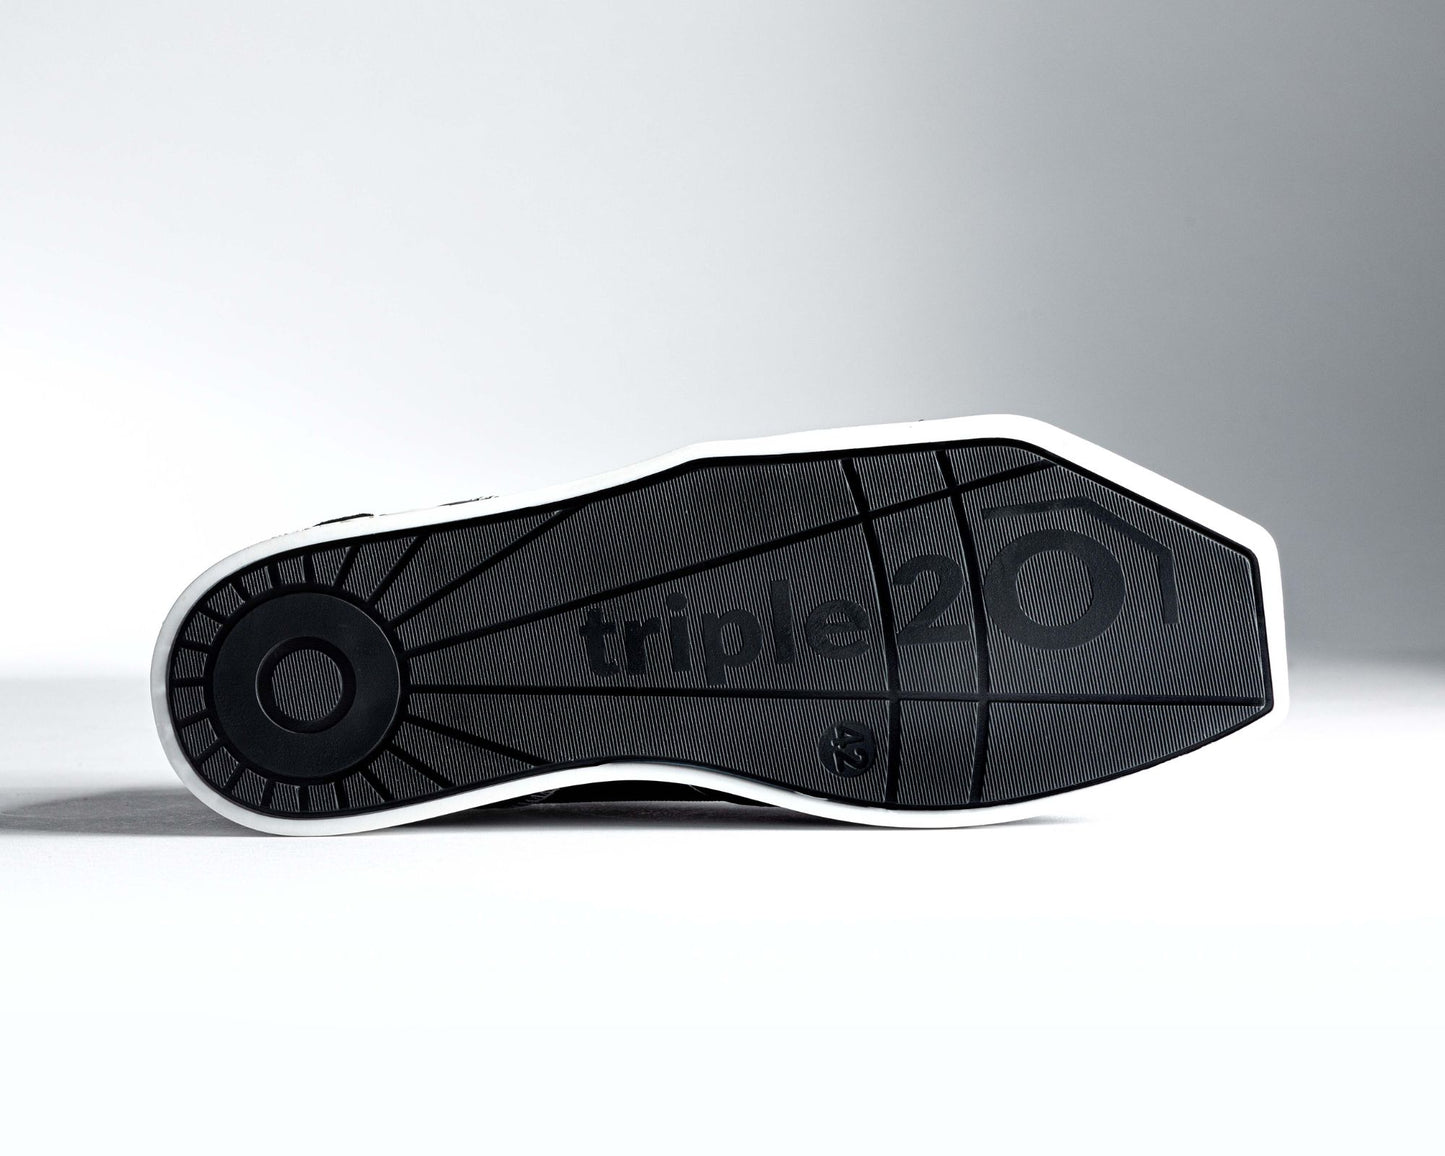 Abbildung einer triple20 Dart-Schuhsohle aus TPR von unten. Schön erkennbar ist das ausgereifte Design, das sich über Form und Sohlenmuster definiert. Ein großes Markenlogo lässt unverkennbar den Hersteller erkennen.